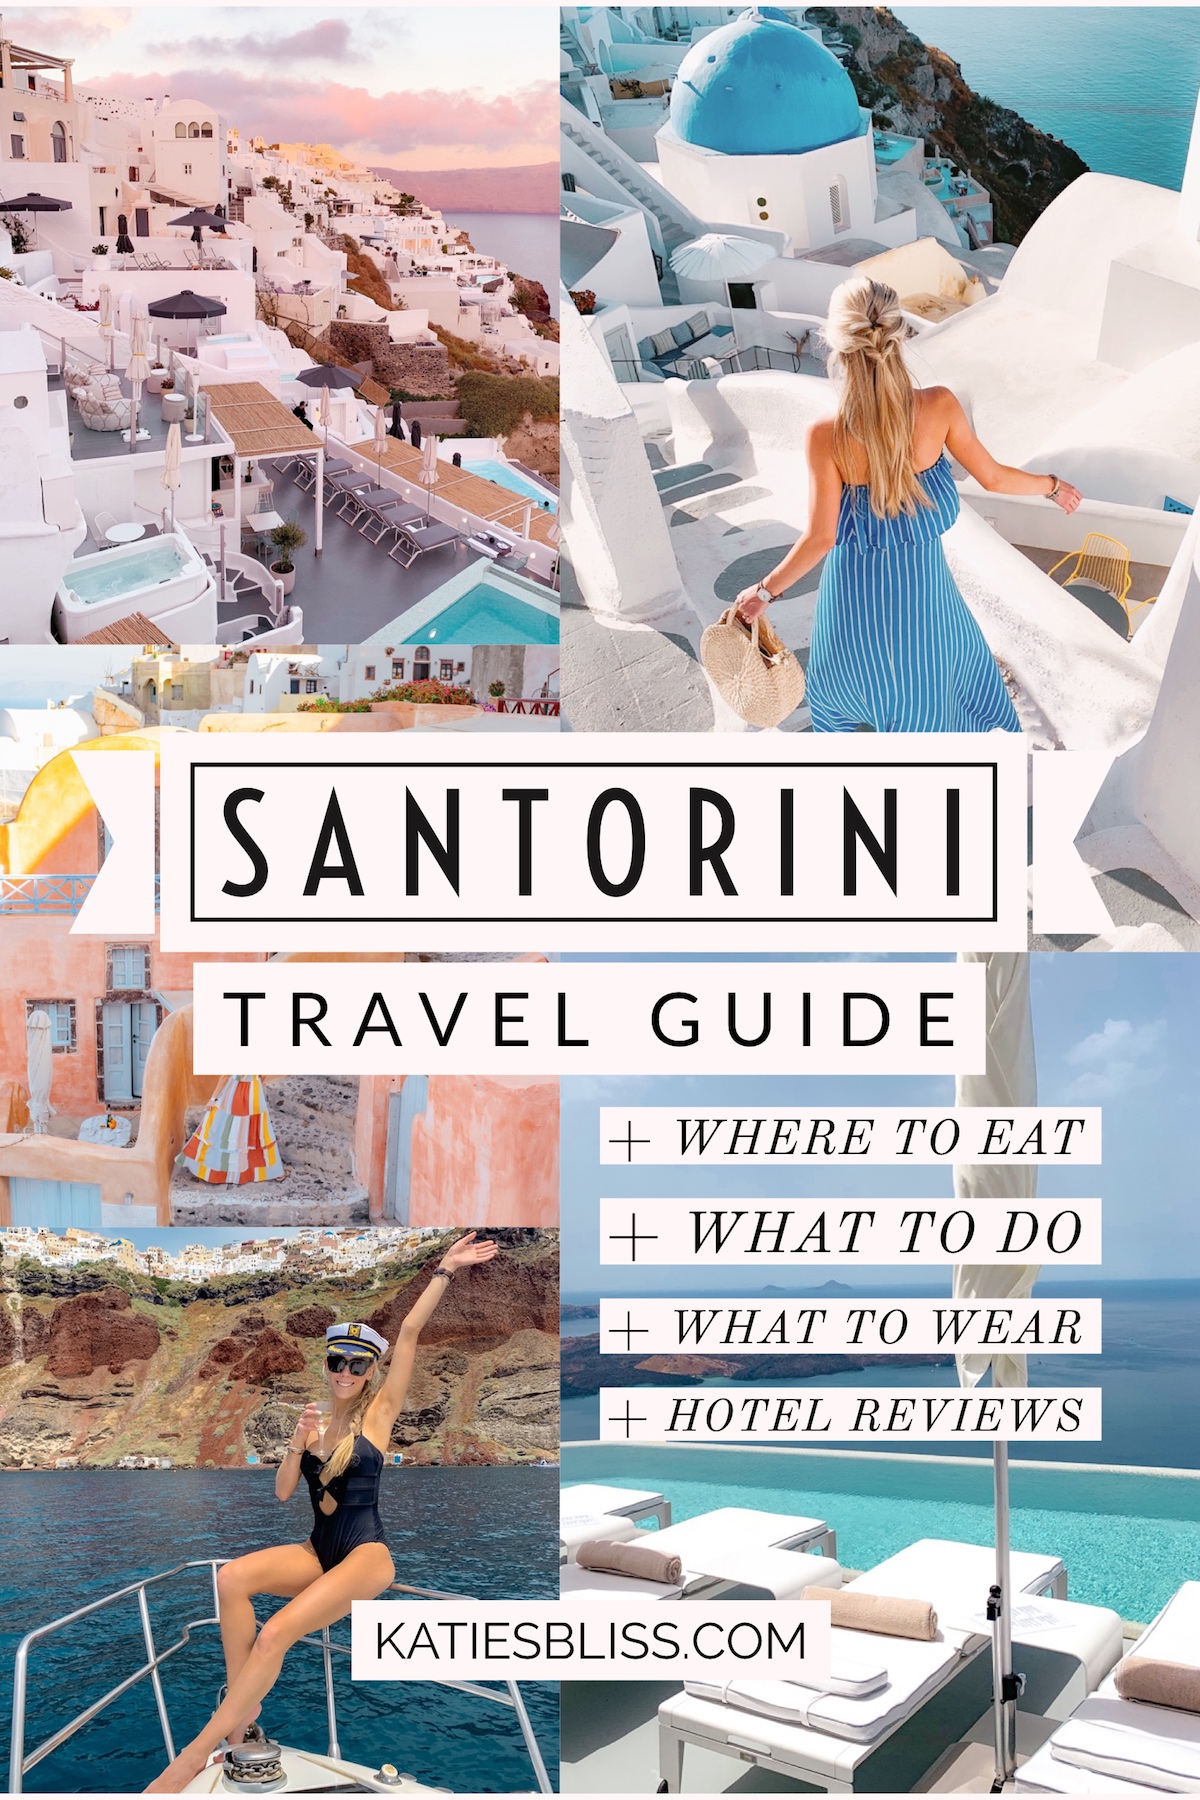 Santorini Travel Guide | Katie's Bliss